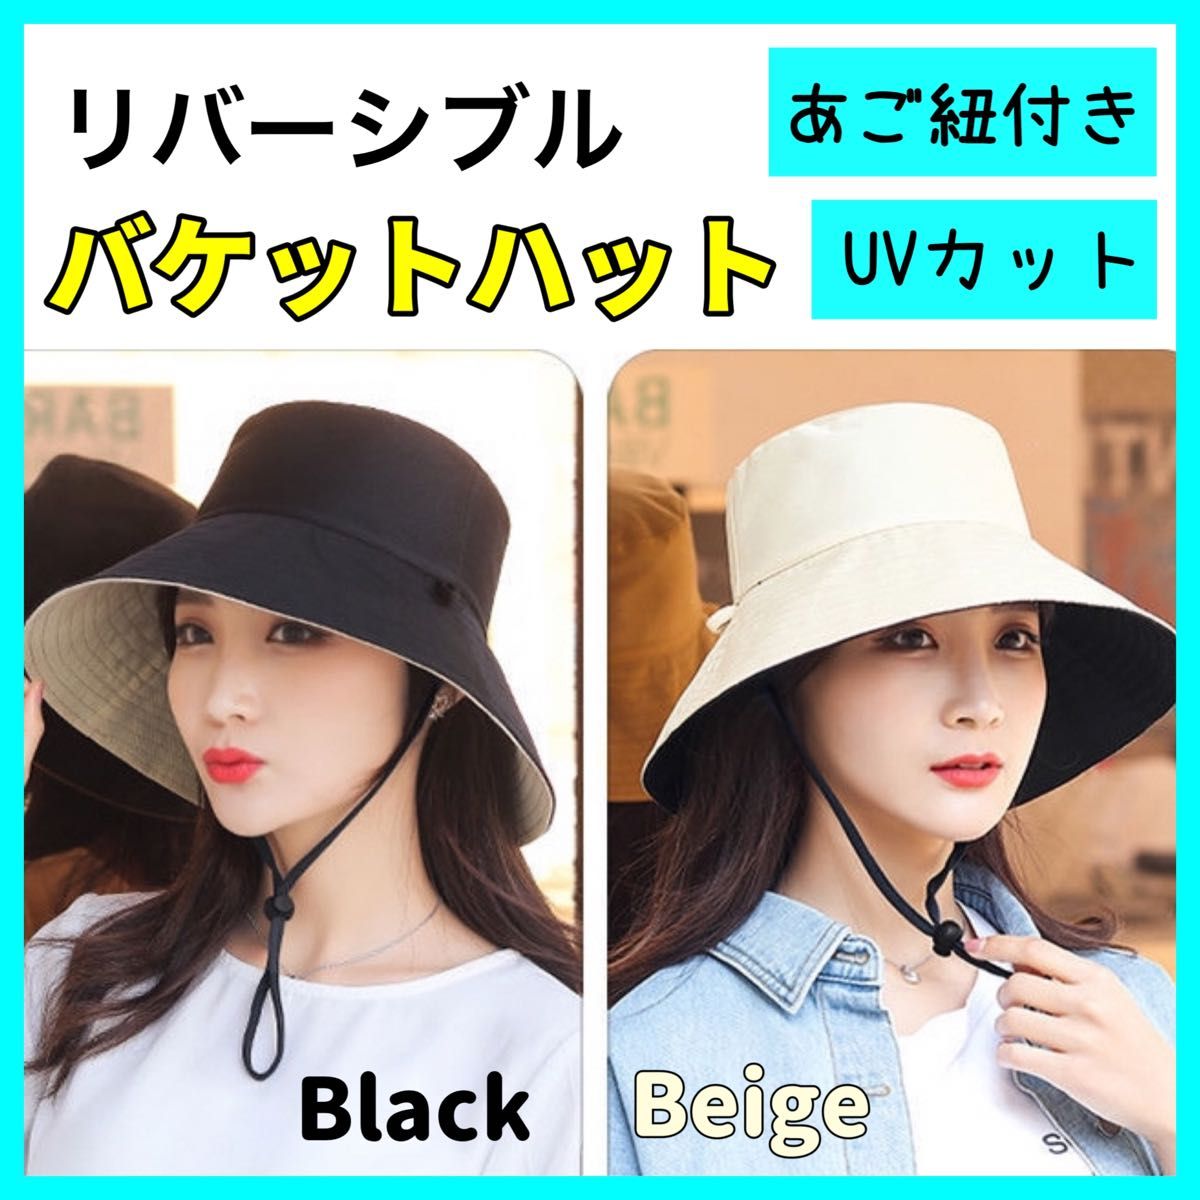 新しいスタイル リバーシブル バケットハット UVカット 帽子 日除け 韓国 つば広 小顔 白黒